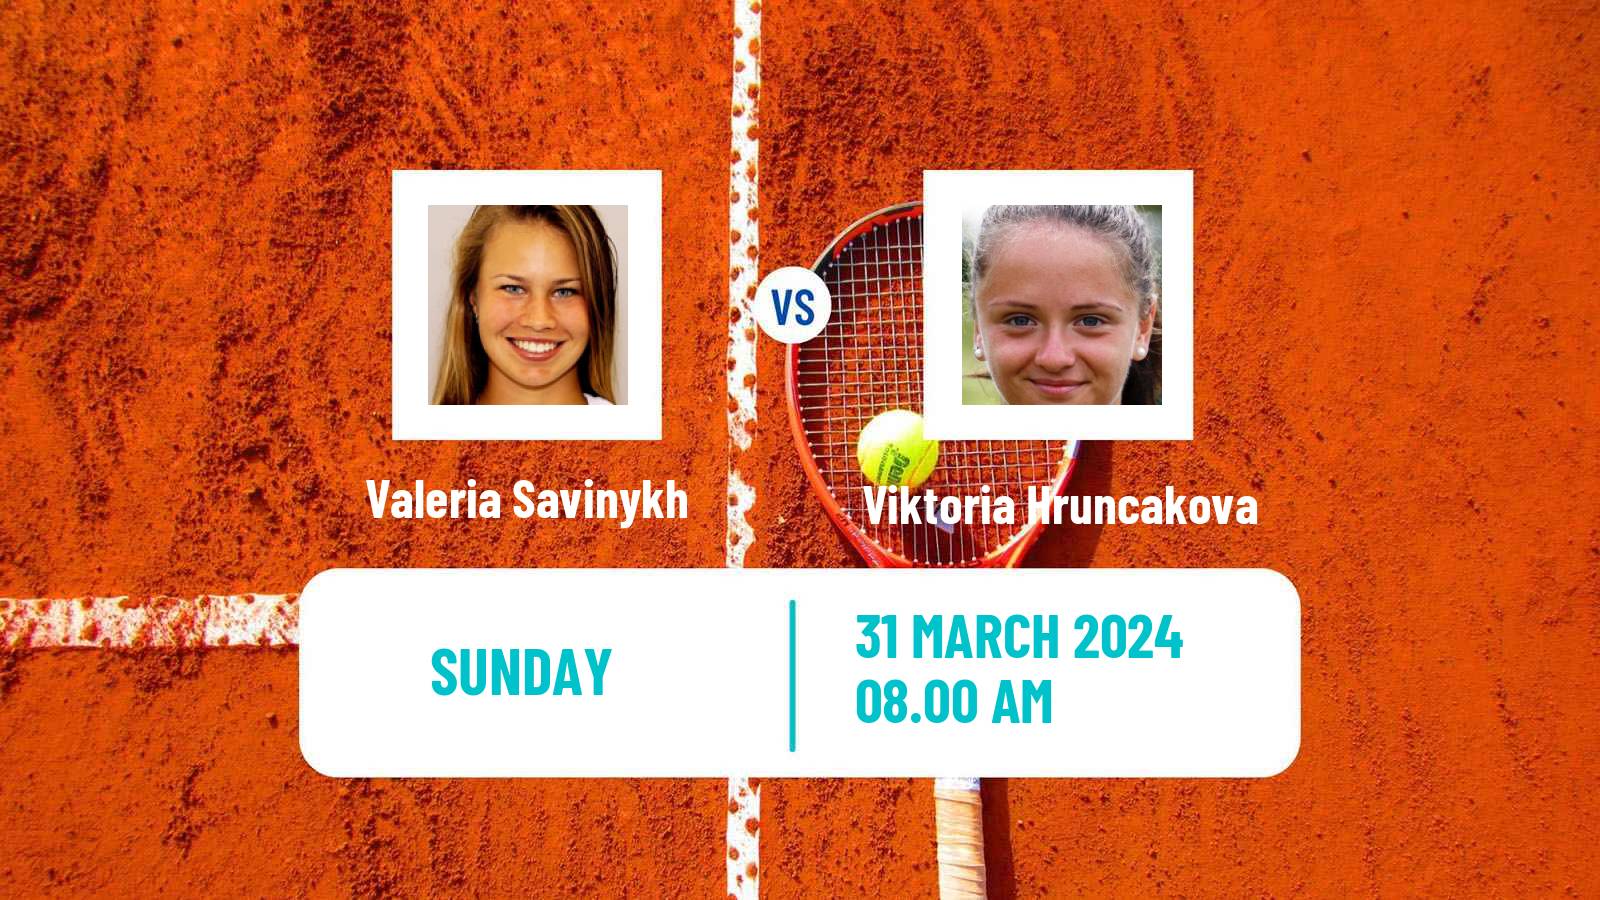 Tennis ITF W50 Murska Sobota Women Valeria Savinykh - Viktoria Hruncakova